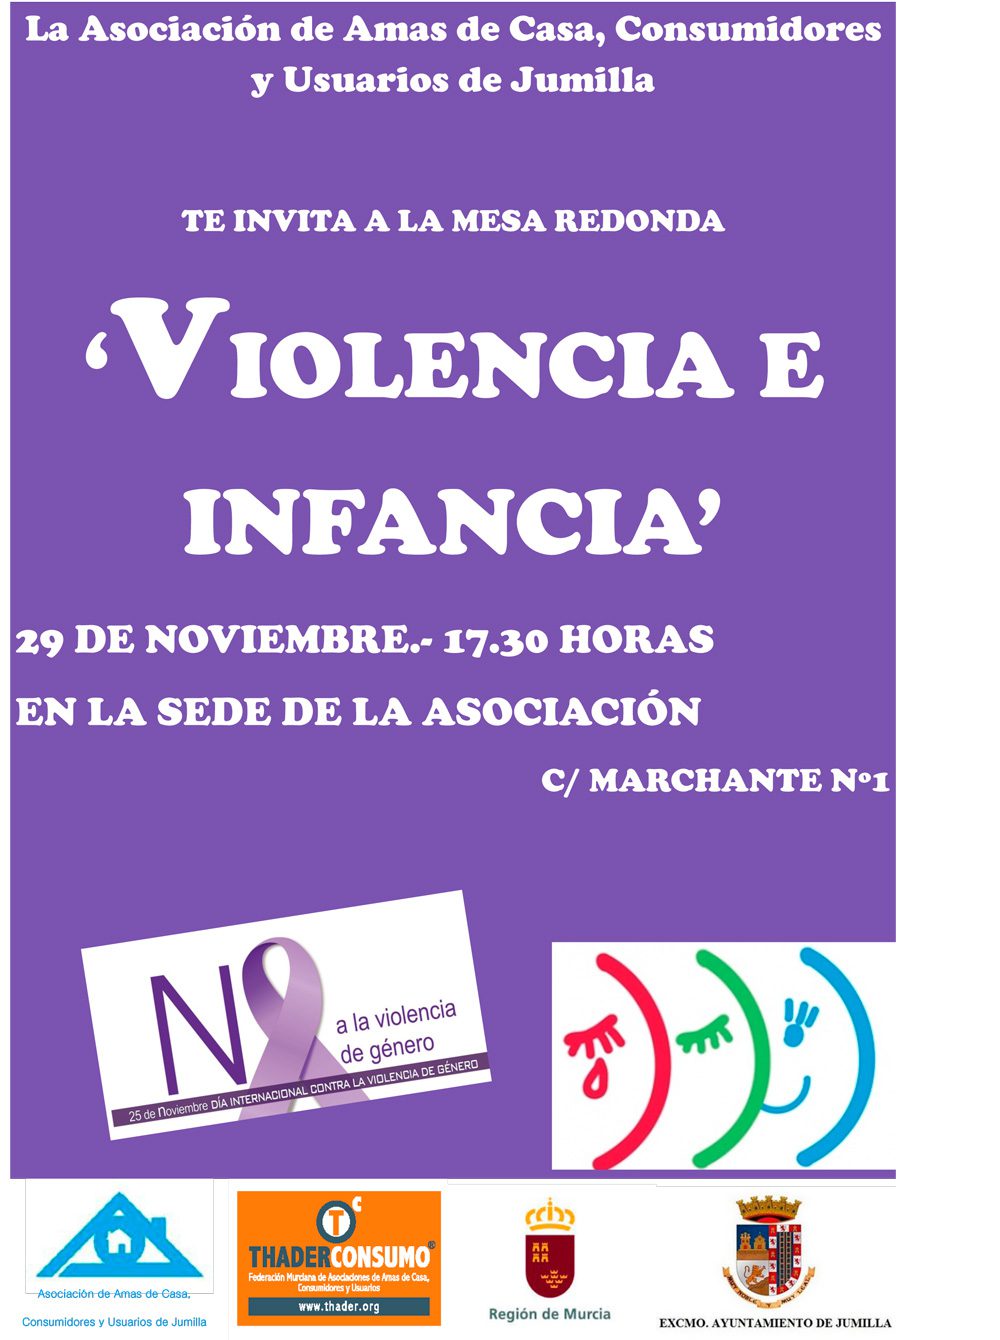 La Asociación de Amas de Casa, Consumidores y Usuarios de Jumilla ha organizado una mesa redonda sobre ‘Violencia e infancia’